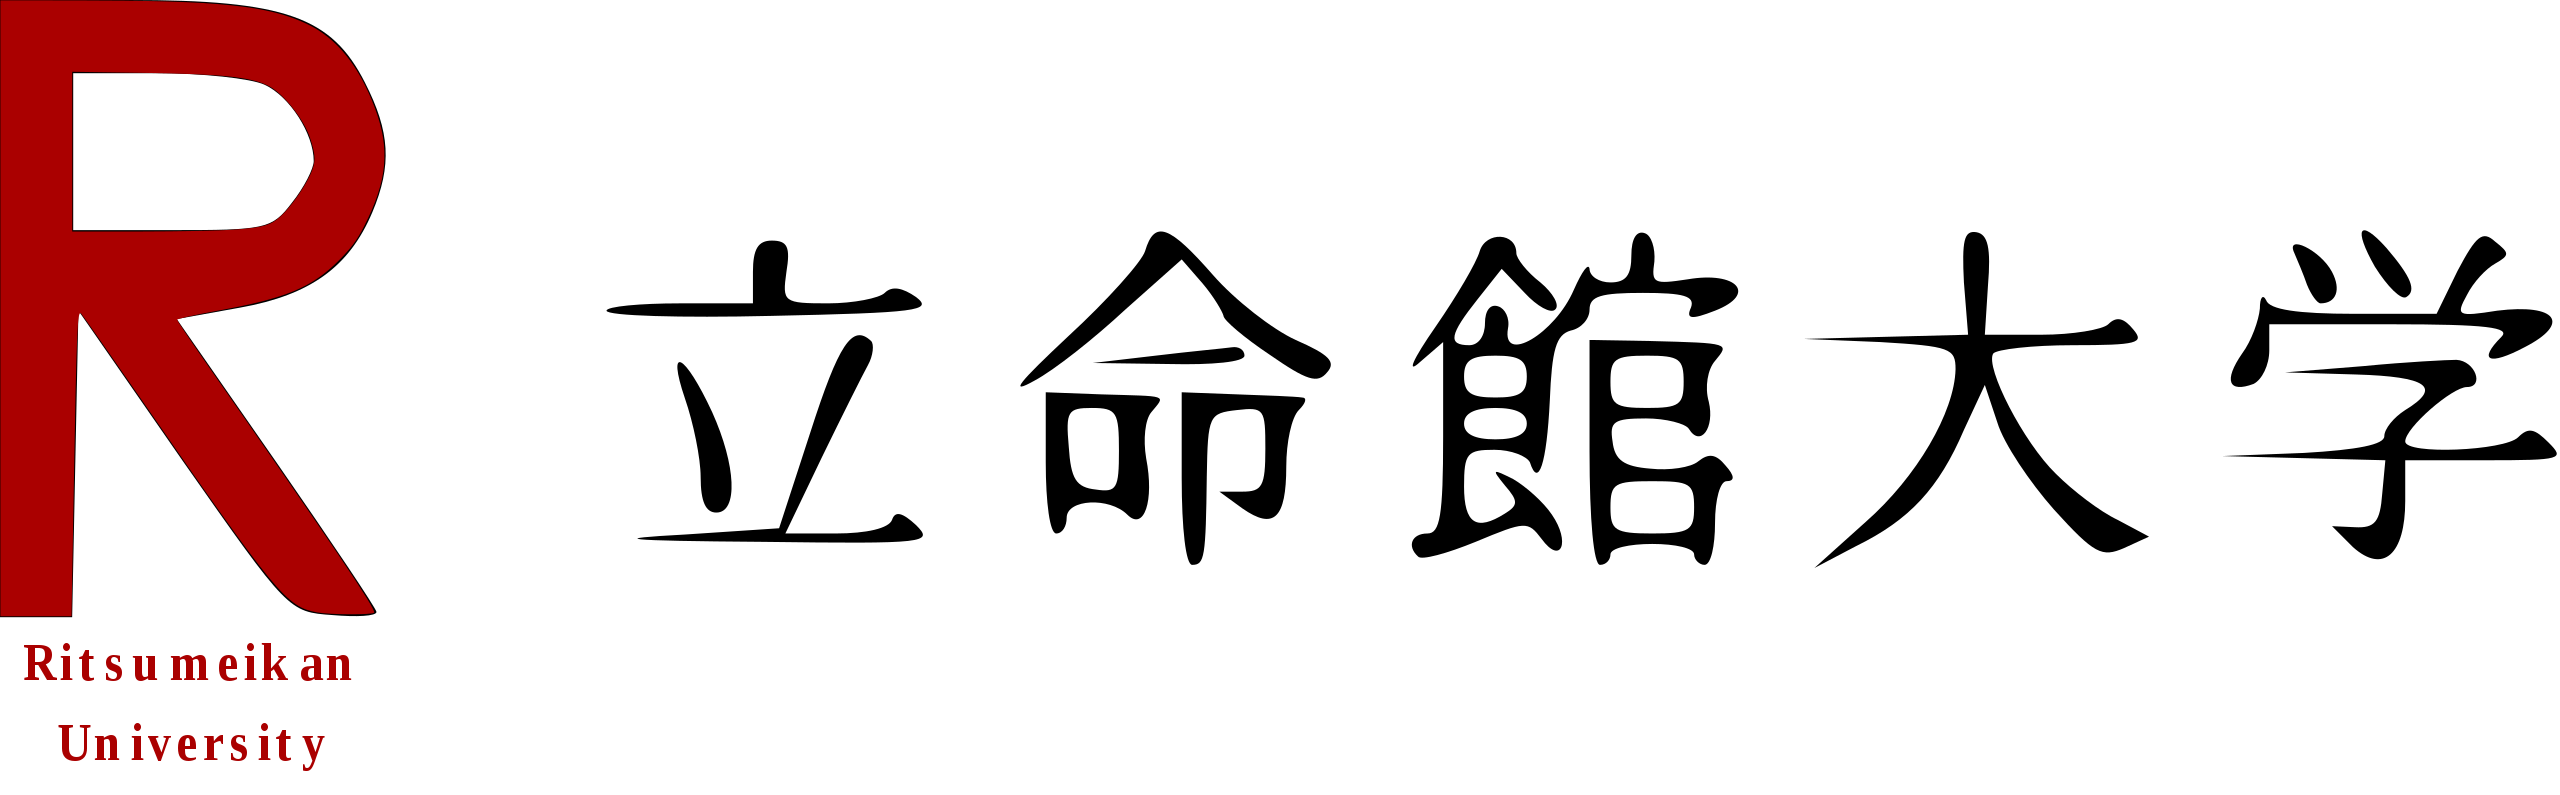 Logo_rits_univ